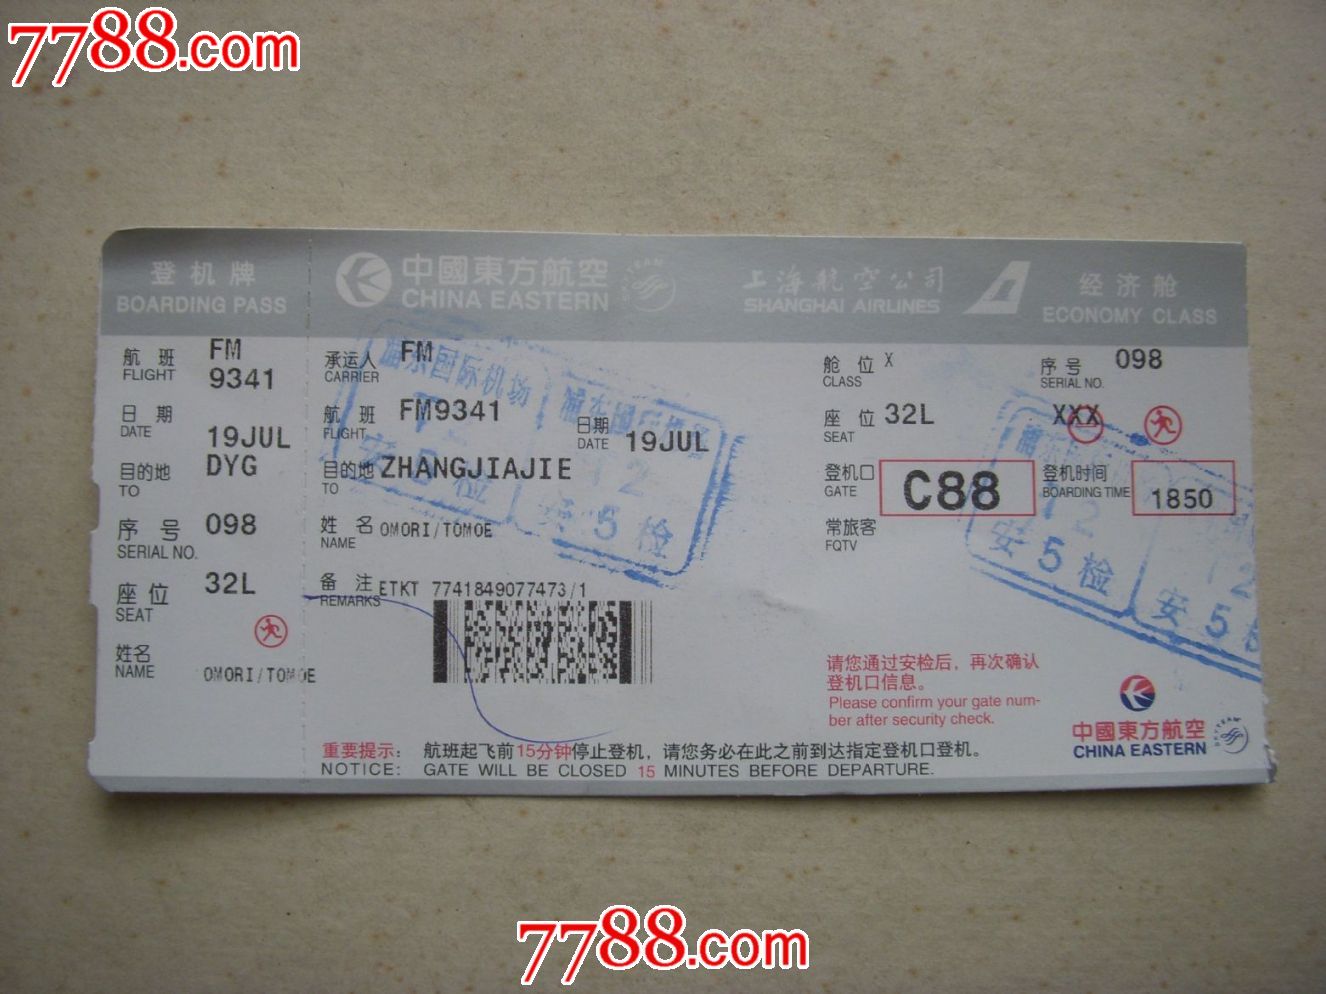 东航上海浦东机场登机牌-价格:5元-se2015647